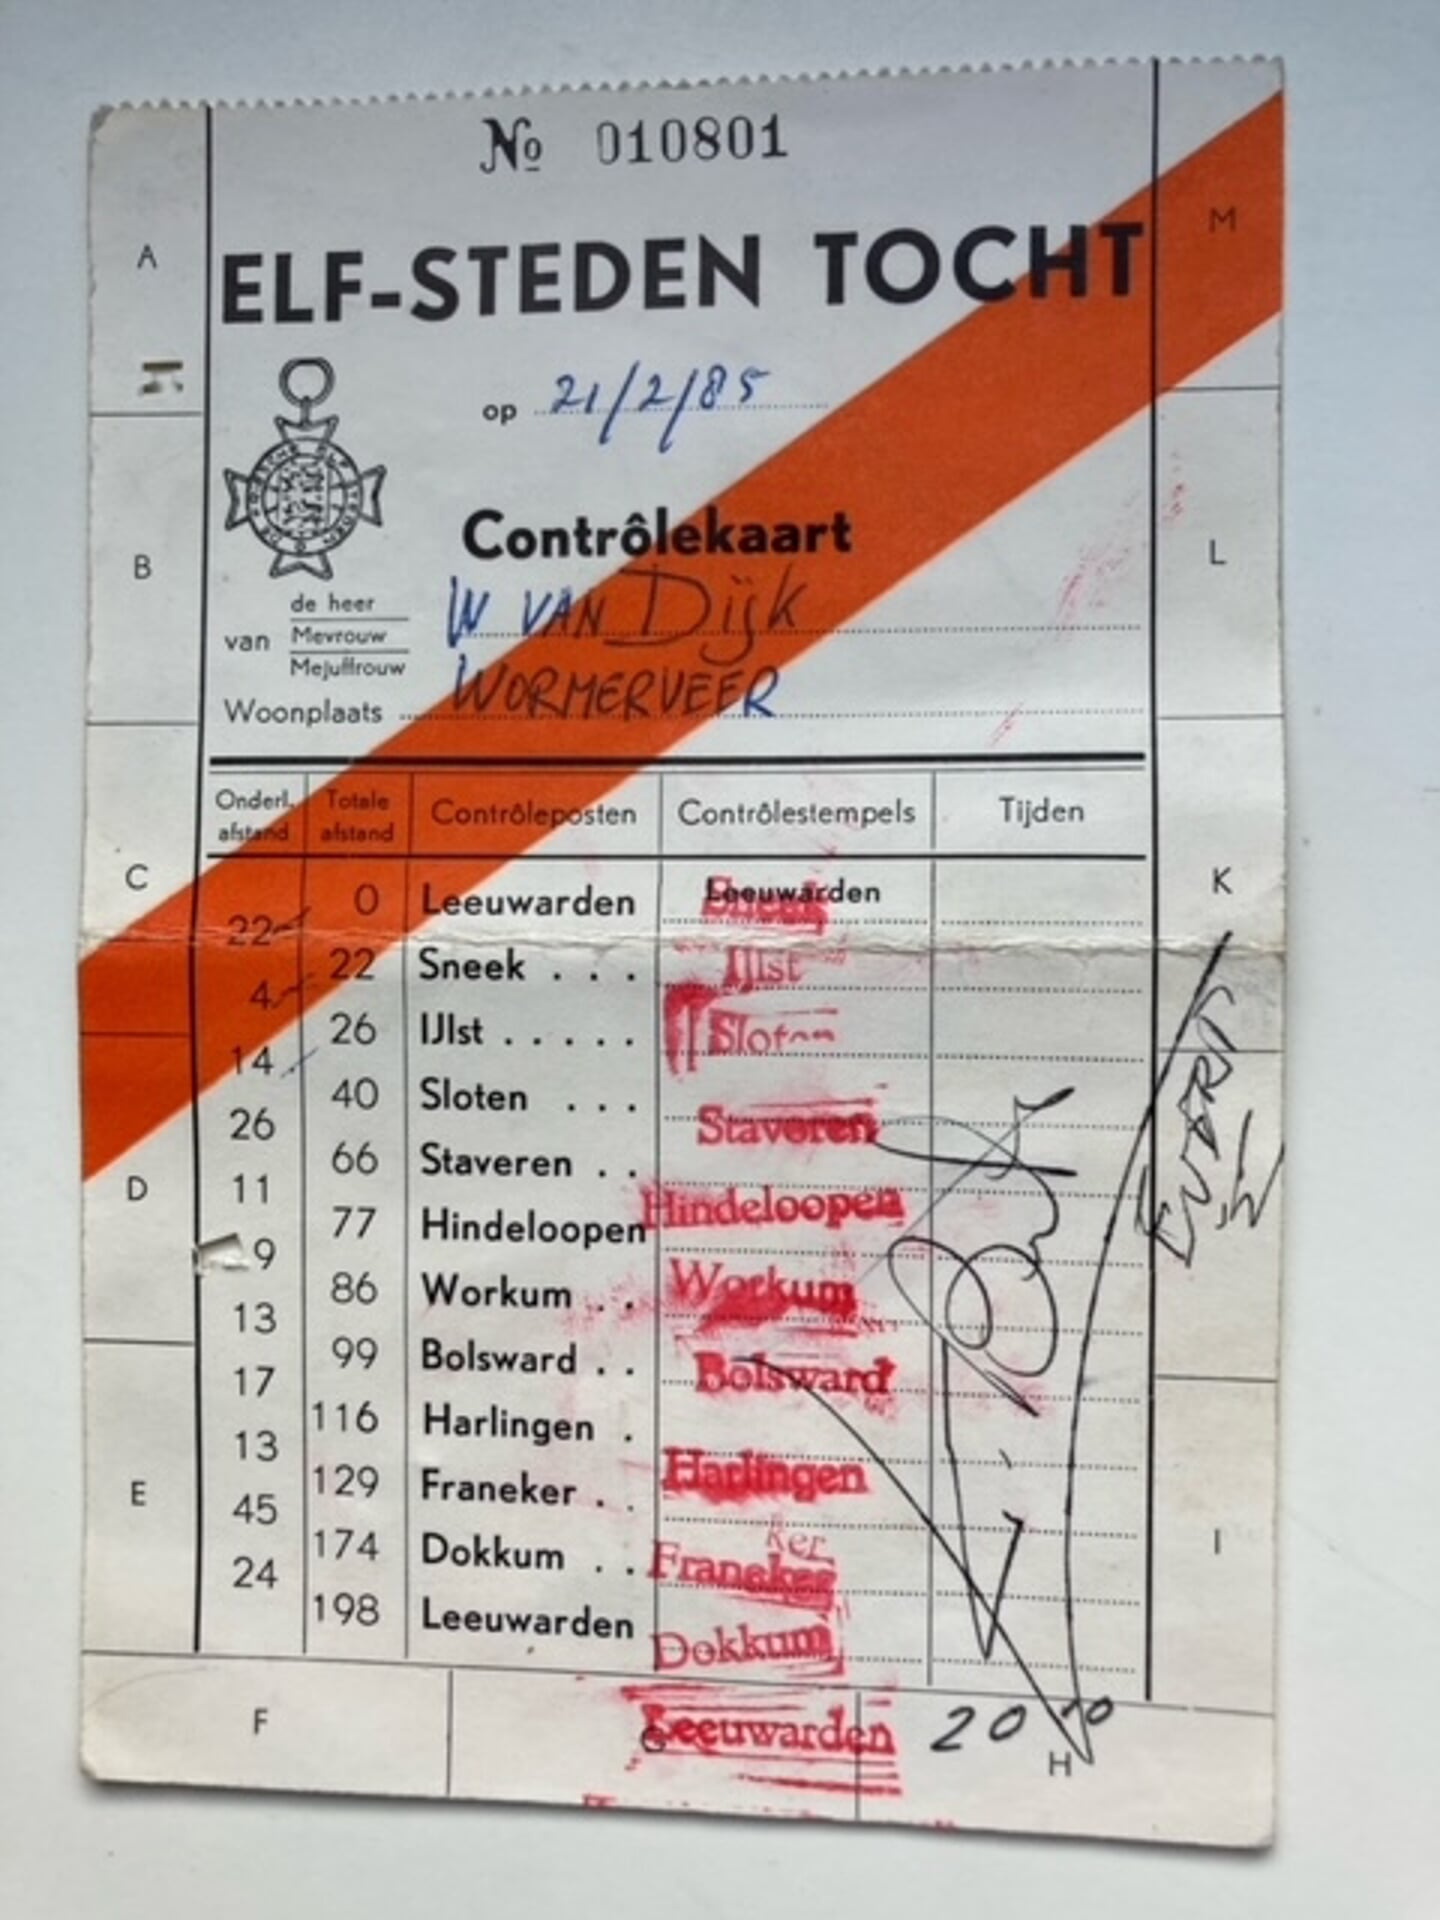 Deze stempelkaart is bijzonder omdat Evert van Benthem, de winnaar van 1985 en 1986, zijn handtekening erop gezet heeft. Die zie je rechts van de stempels - Wim van Dijk.